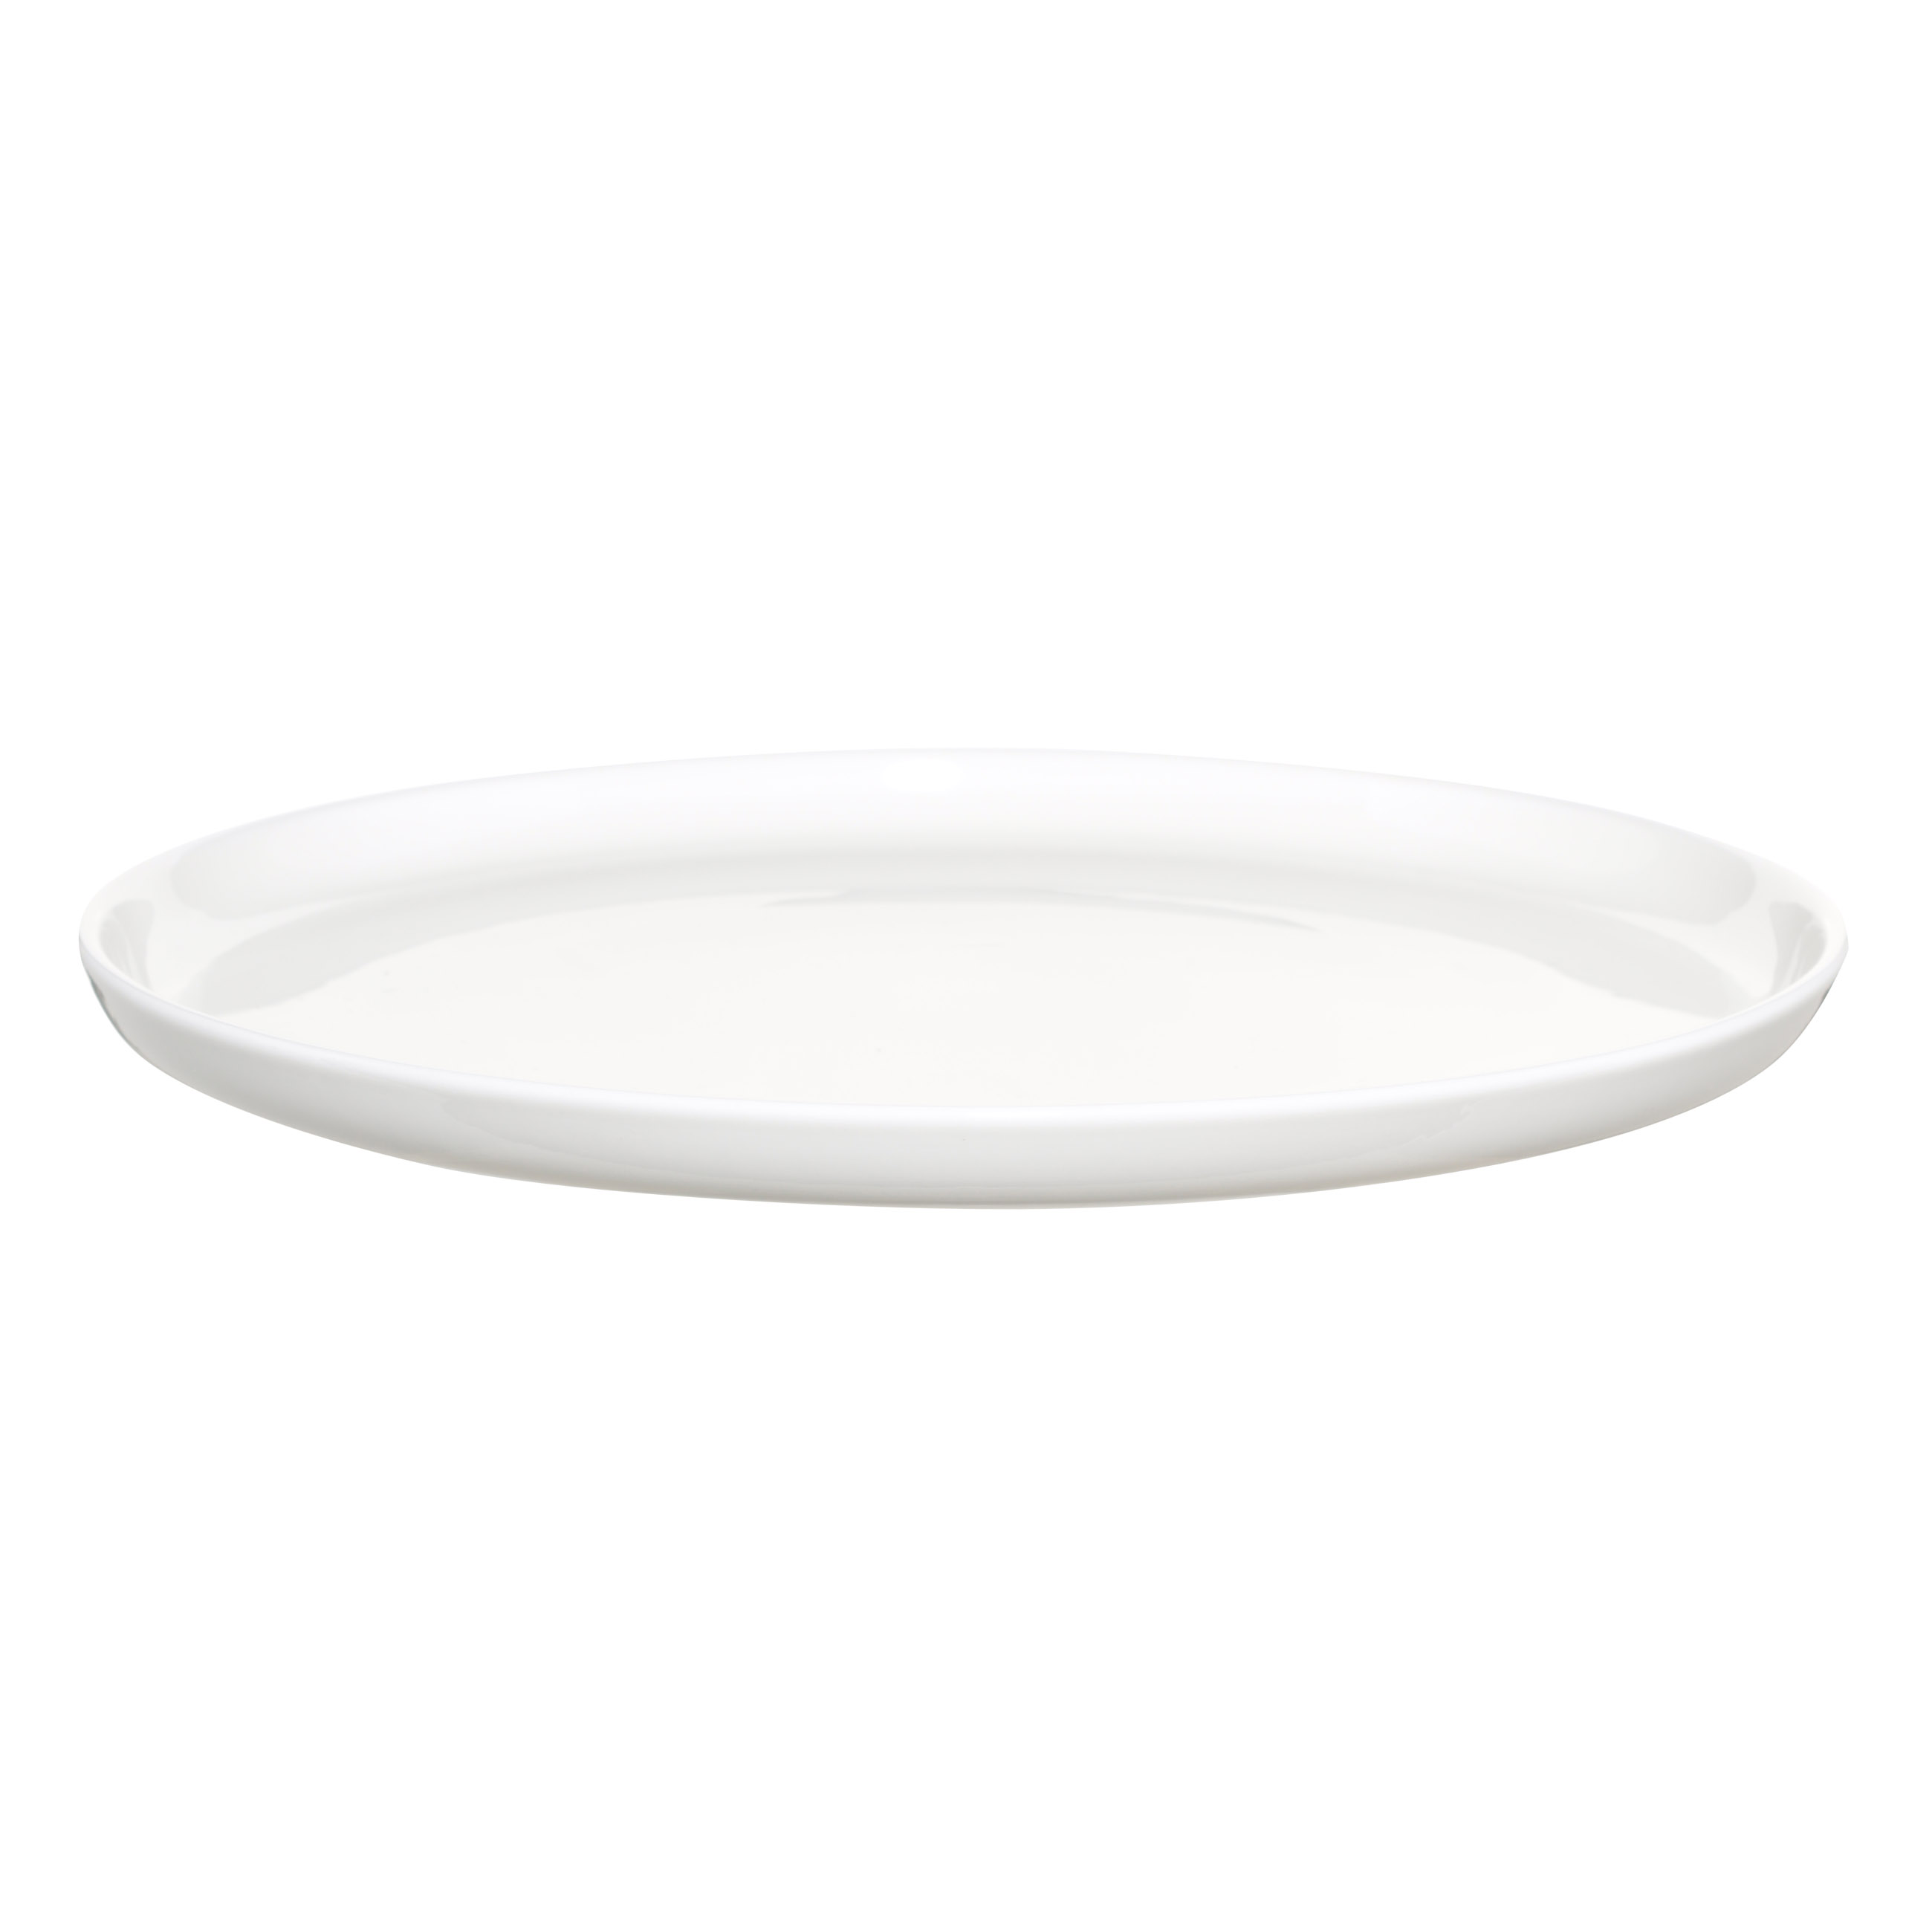 Тарелка обеденная, 26 см, фарфор F, белая, Ideal white изображение № 2